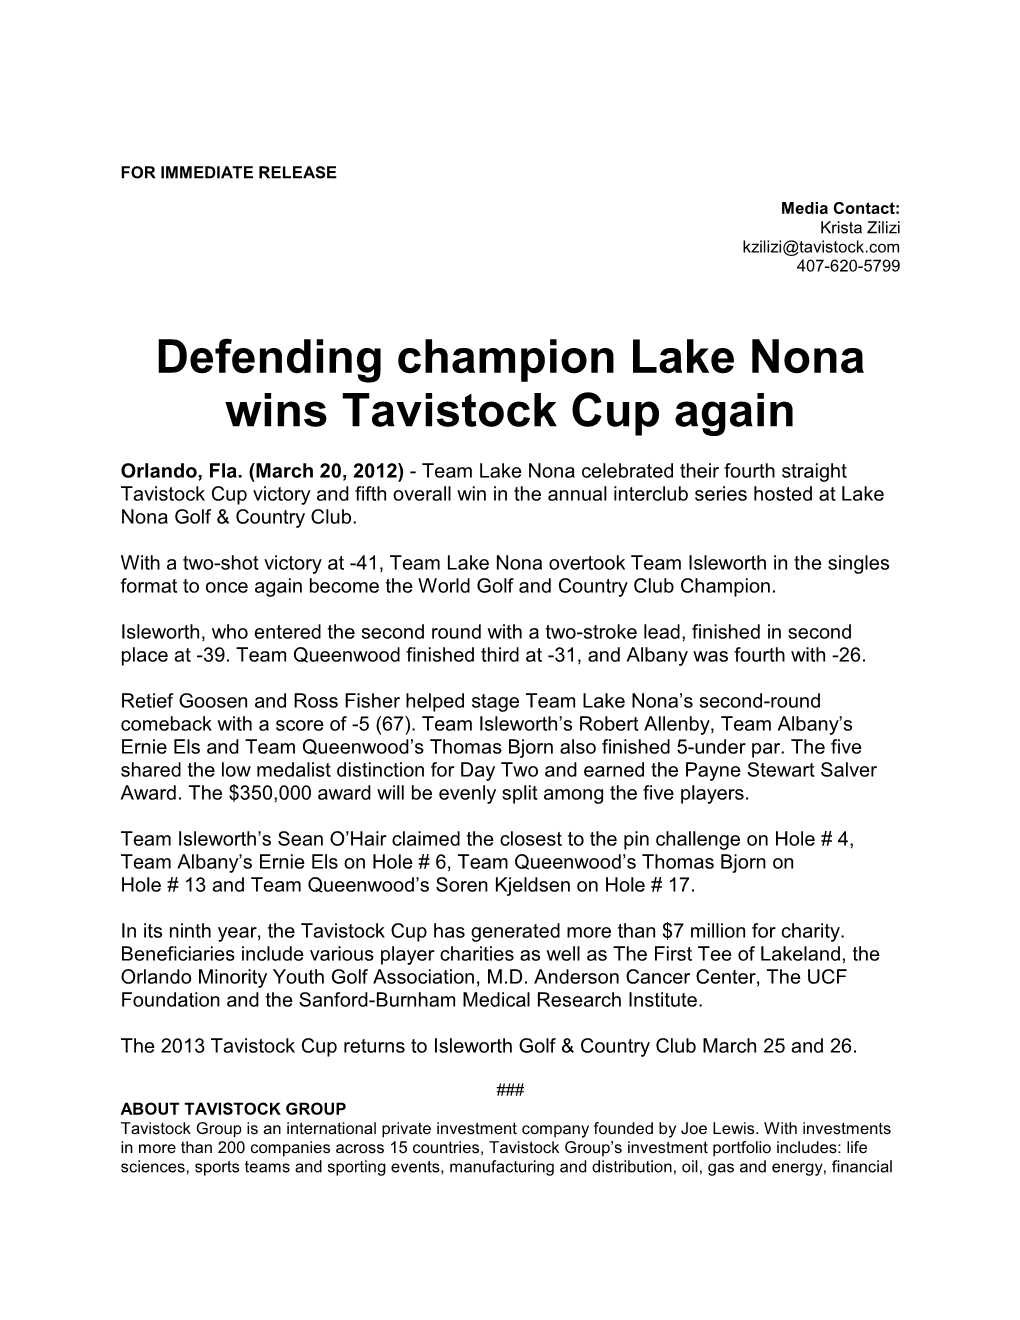 Defending Champion Lake Nona Wins Tavistock Cup Again